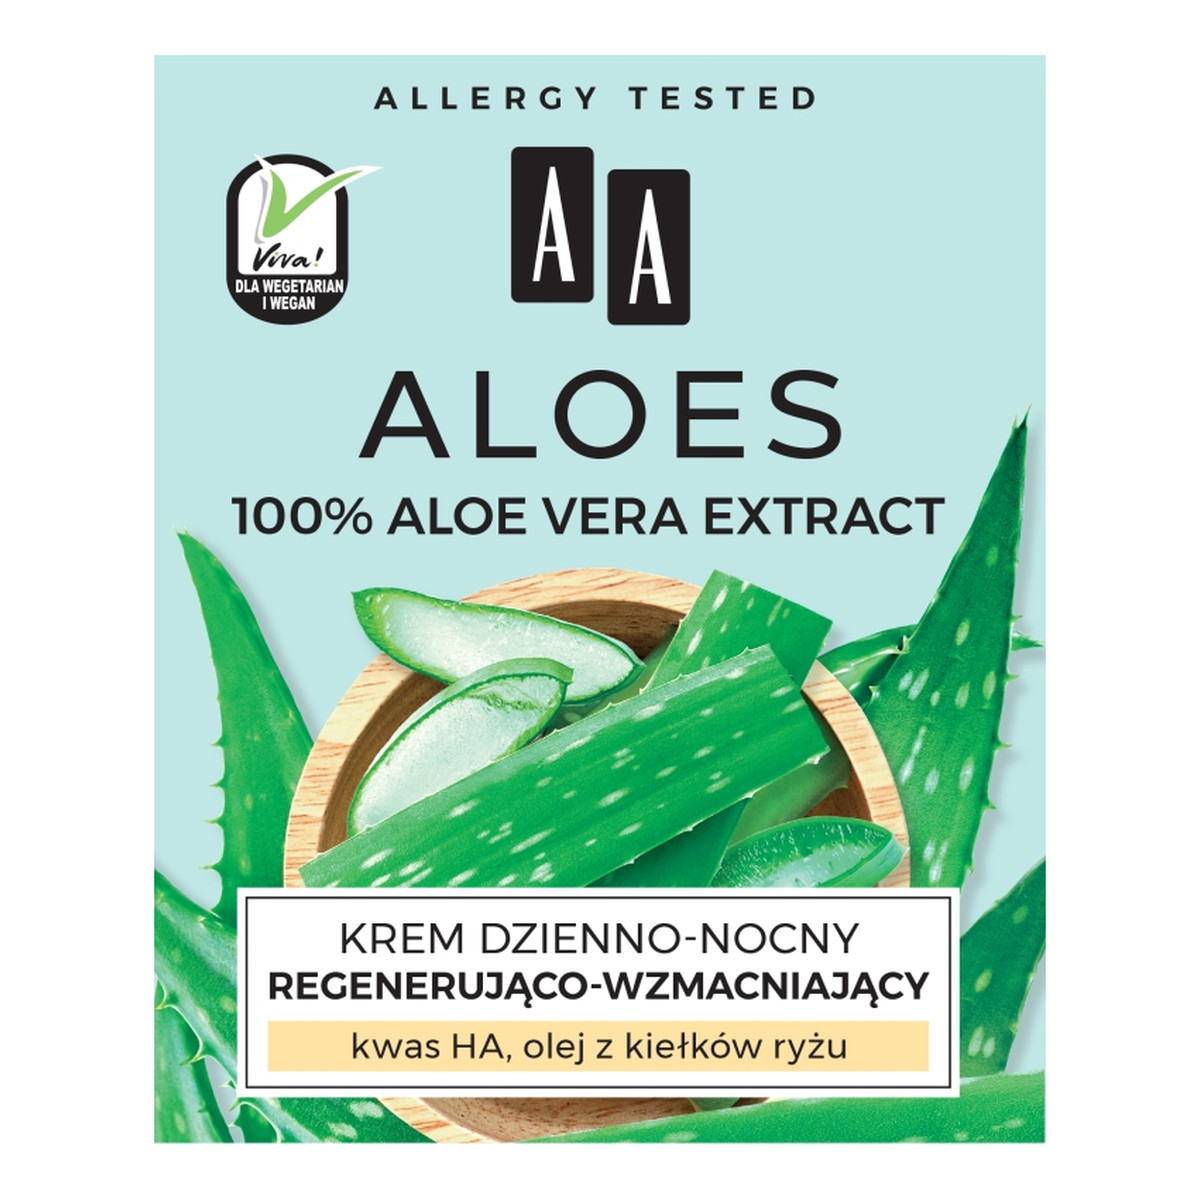 AA Aloes 100% Aloe Vera Extract krem dzienno-nocny regenerująco-wzmacniający 50ml